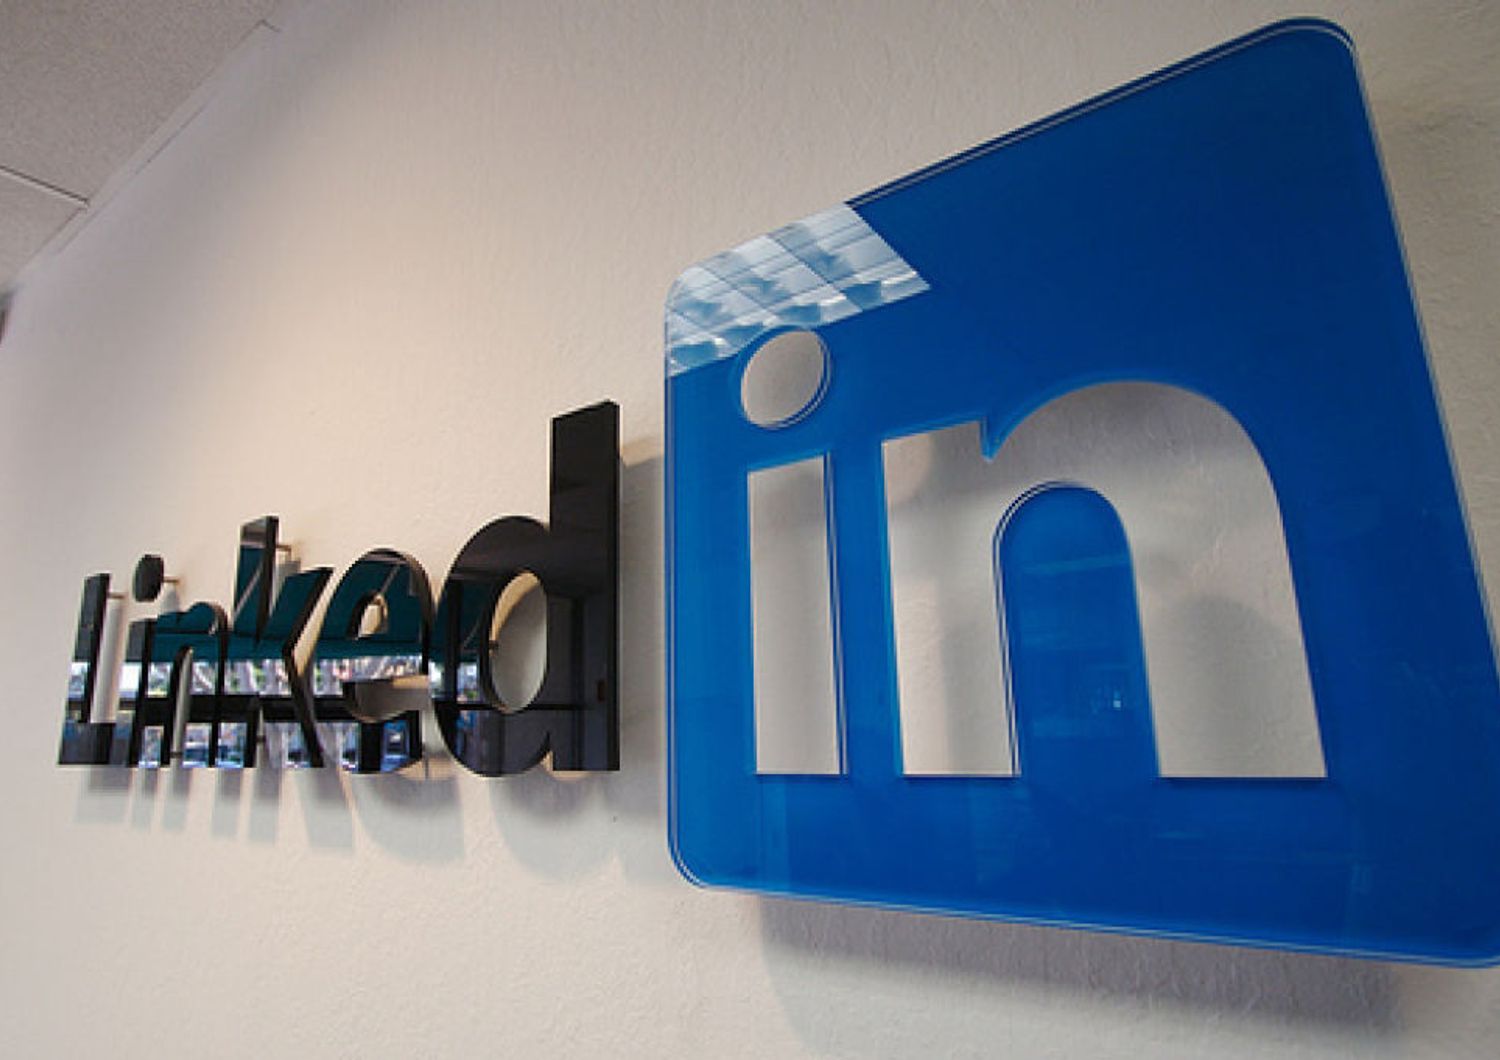 LinkedIn compie 13 anni e festeggia 9 milioni iscritti in Italia